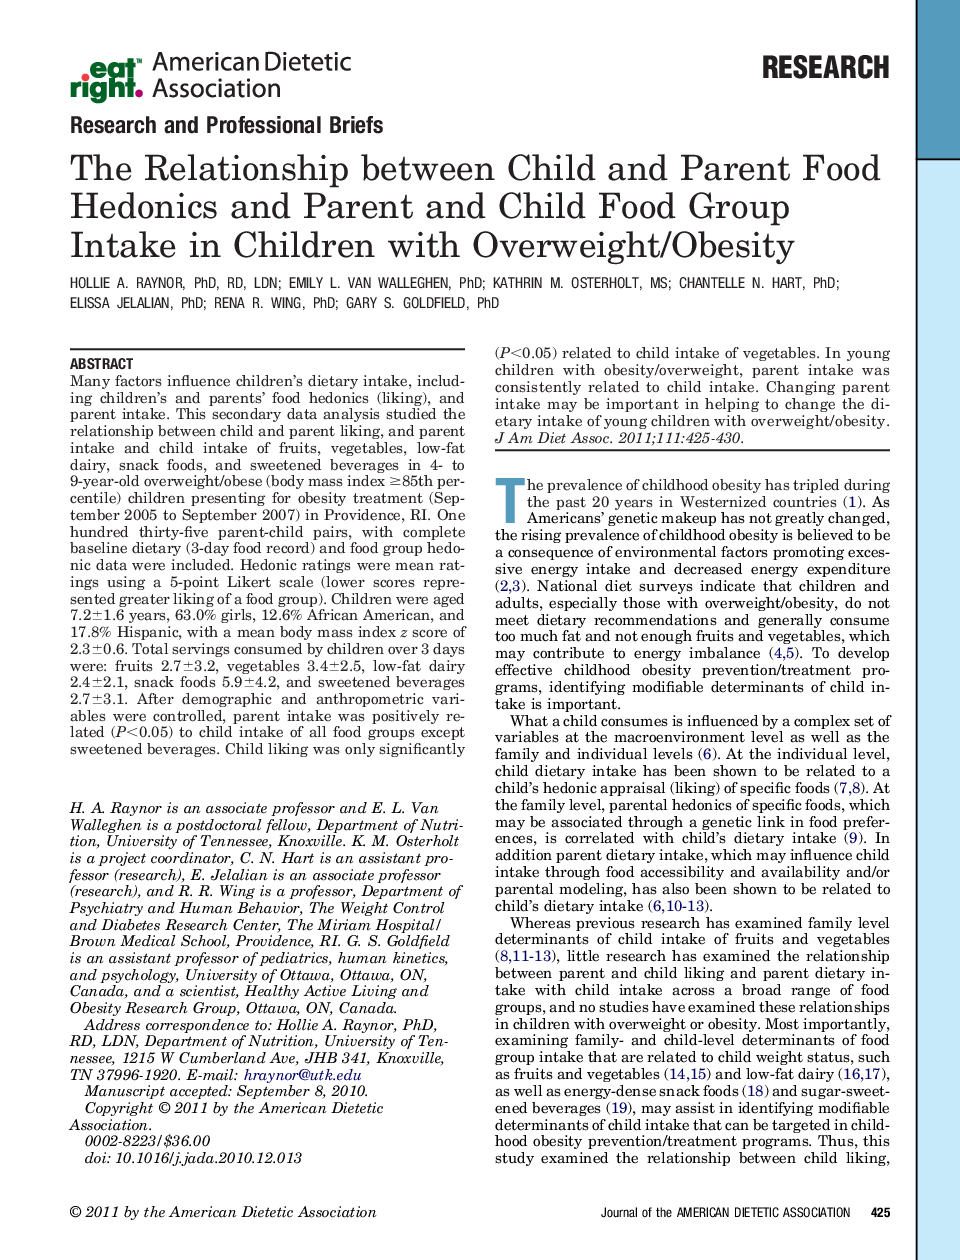 ارتباط بین خوشی و لذت غذایی کودک و والدین و مصرف گروهی غذای کودک و والدین در کودکان مبتلا به اضافه وزن/چاقی